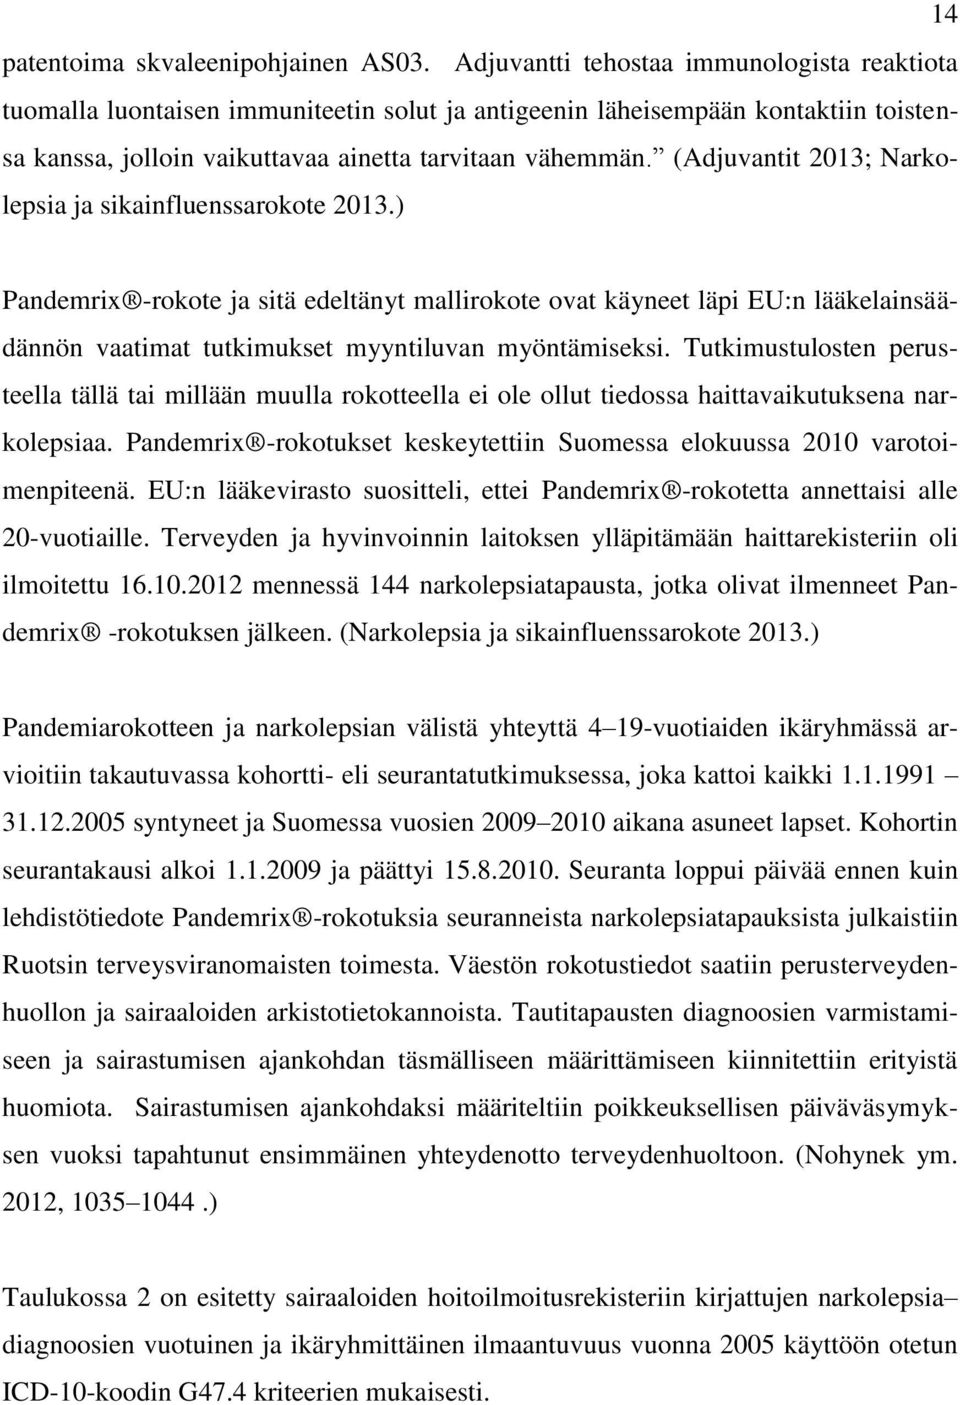 (Adjuvantit 2013; Narkolepsia ja sikainfluenssarokote 2013.) Pandemrix -rokote ja sitä edeltänyt mallirokote ovat käyneet läpi EU:n lääkelainsäädännön vaatimat tutkimukset myyntiluvan myöntämiseksi.